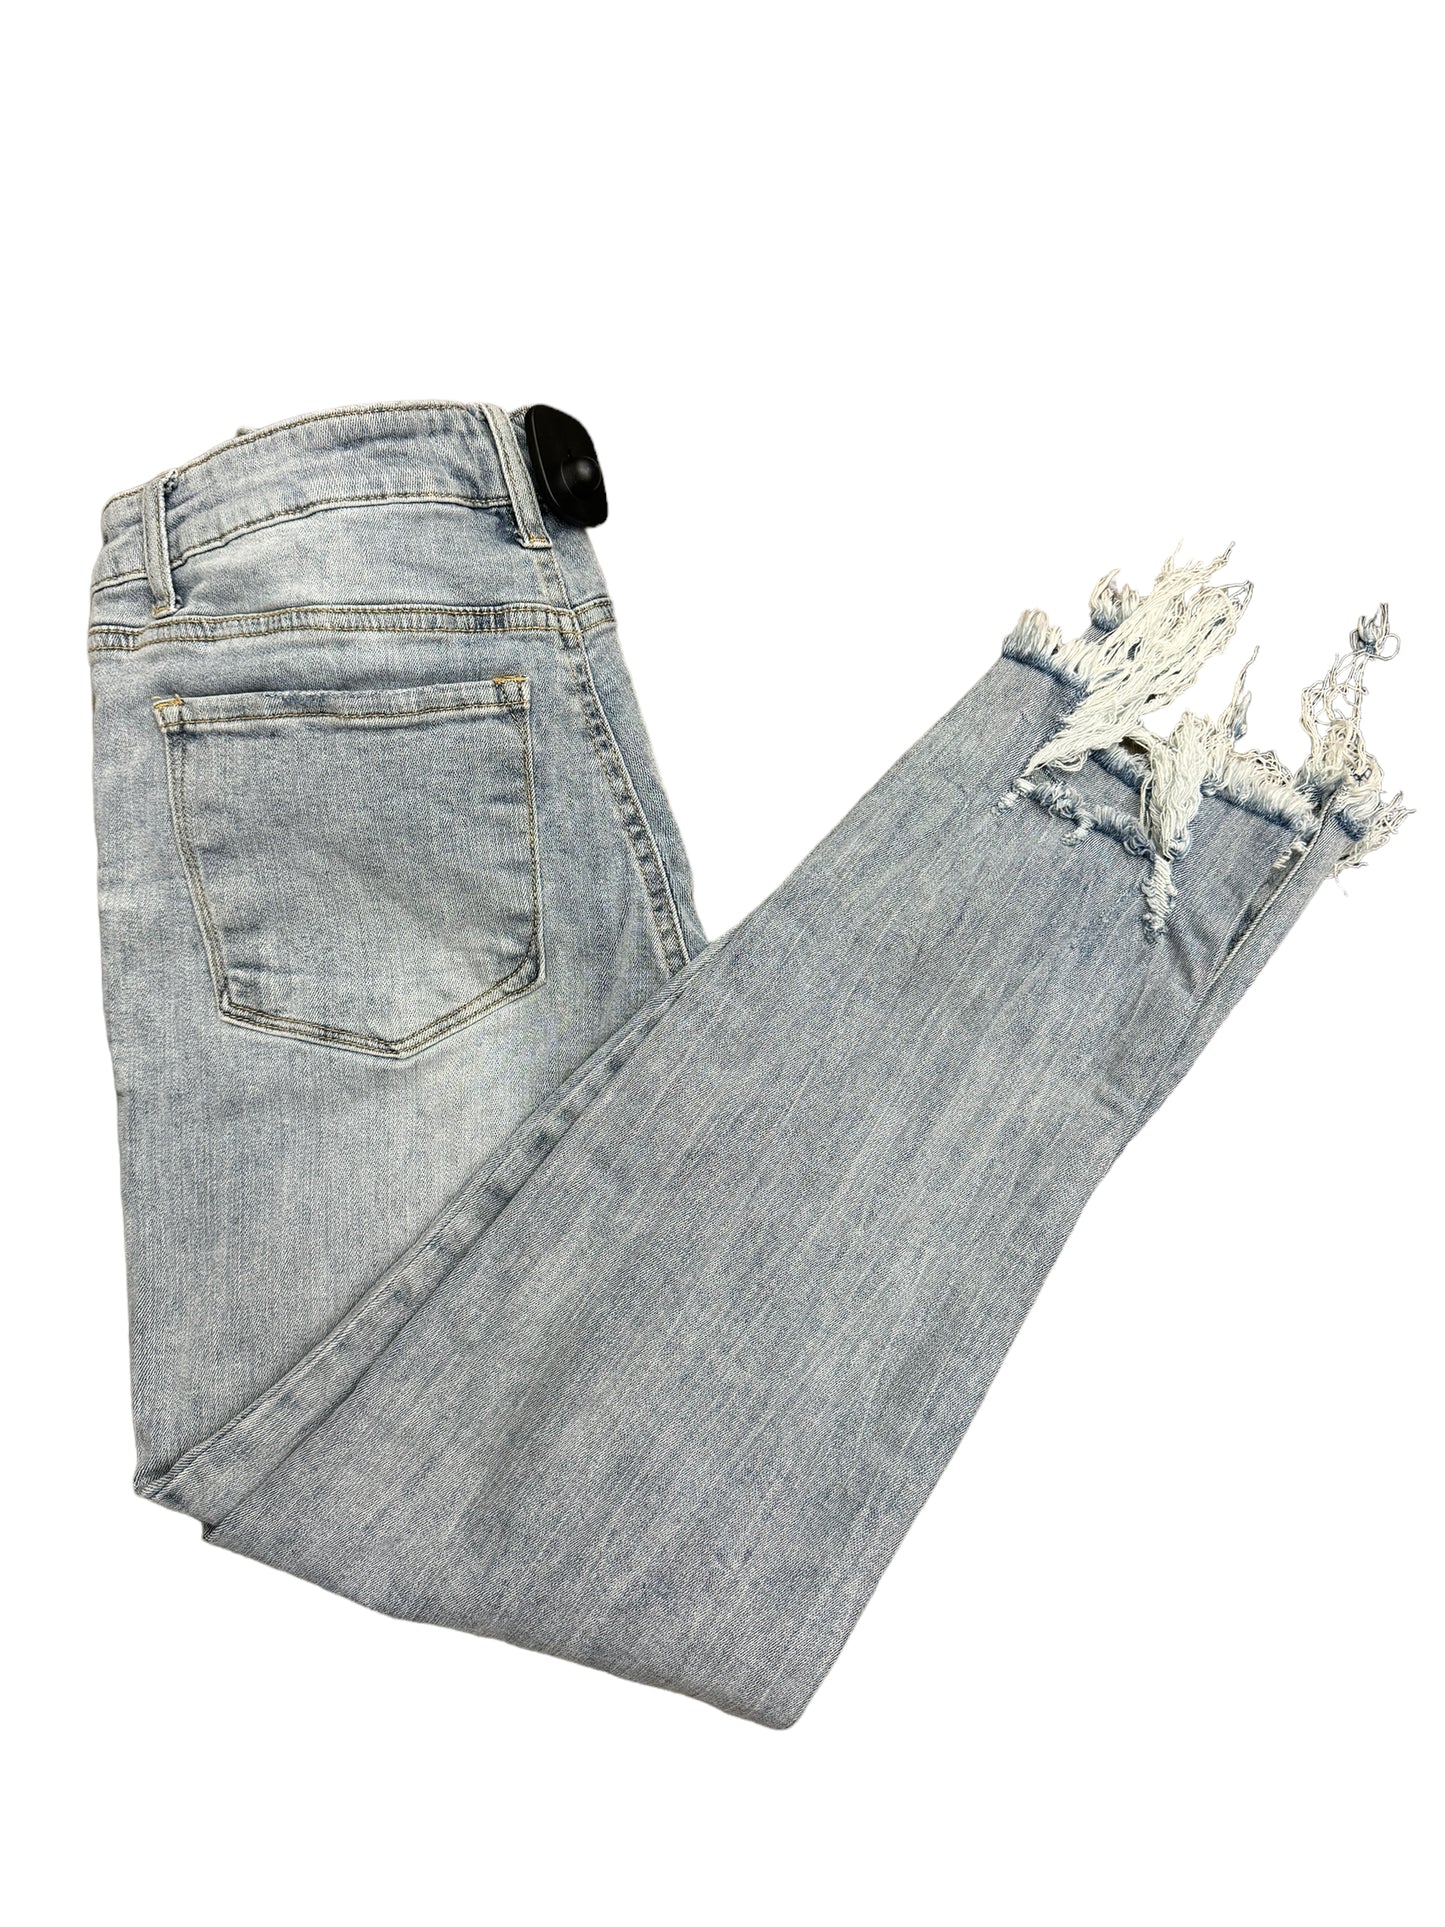 Jeans Skinny By Grey Lab  Size: 10